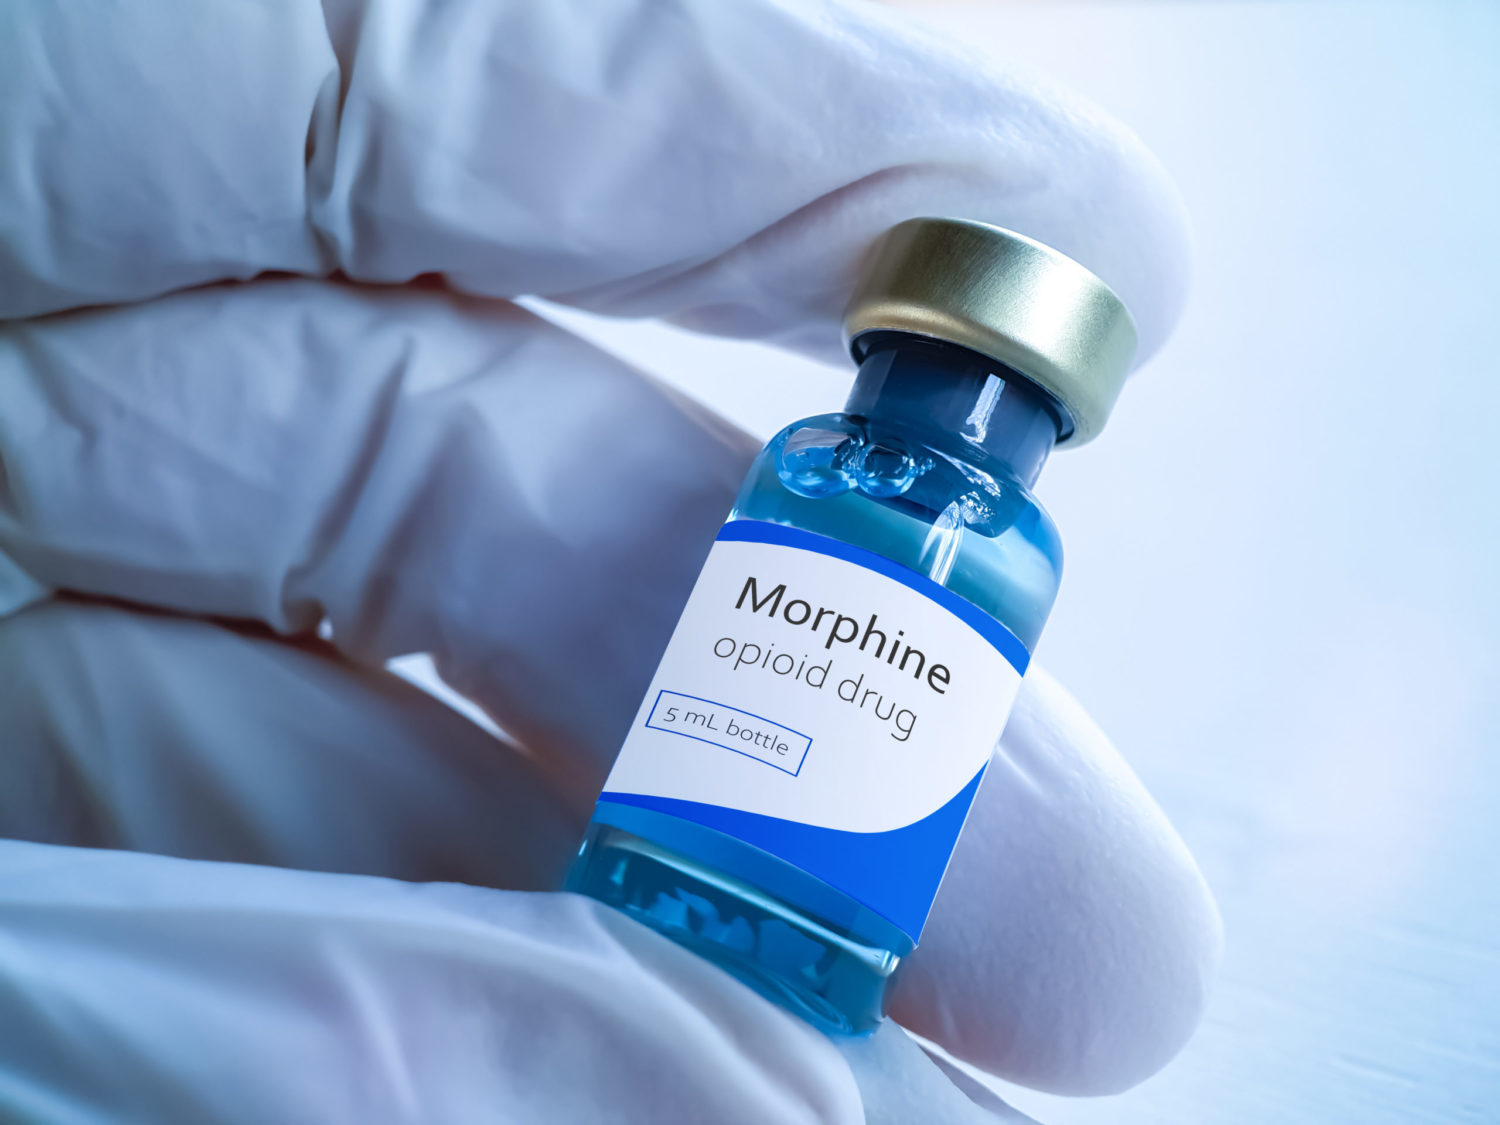 Morphine Prescription in Modern Medicine